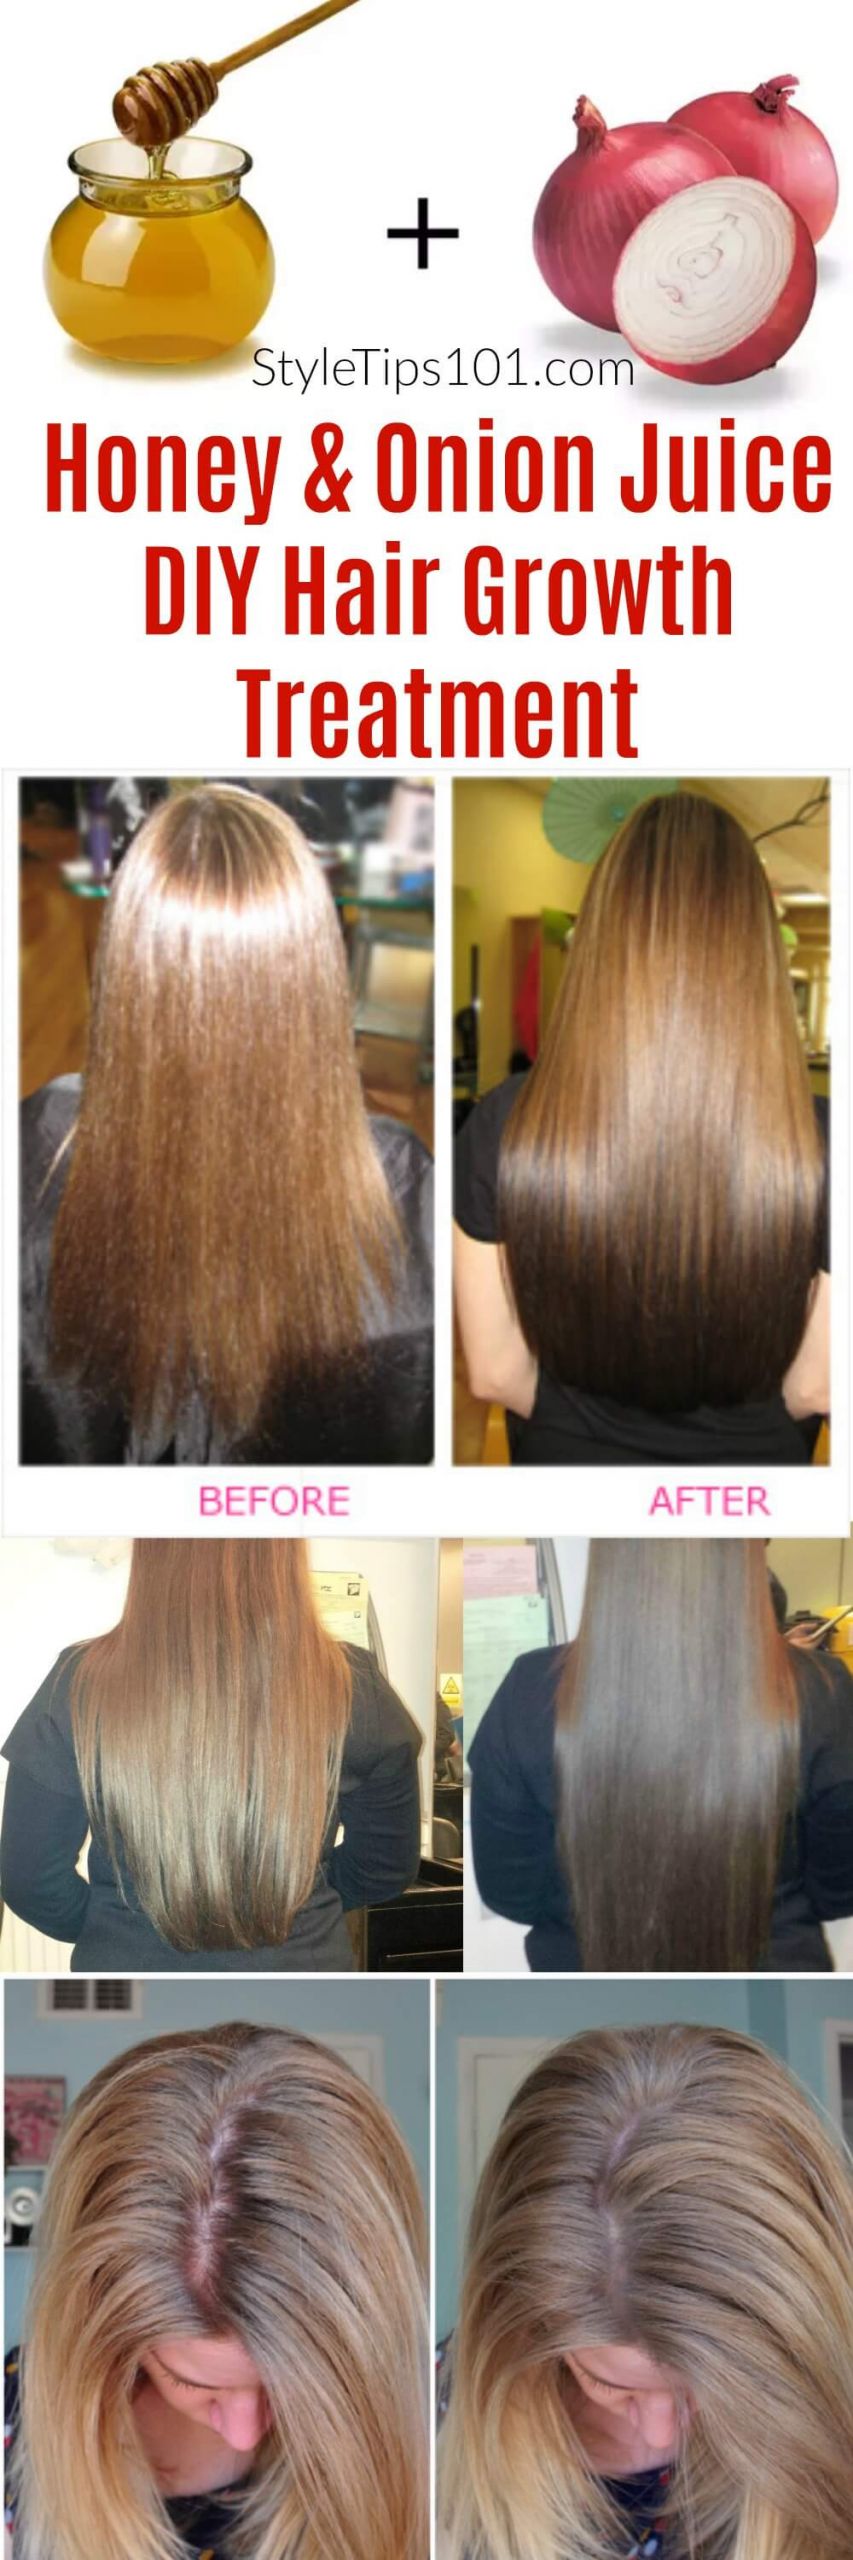 DIY Hair Treatments For Growth
 ion Juice & Honey DIY Hair Growth Treatment